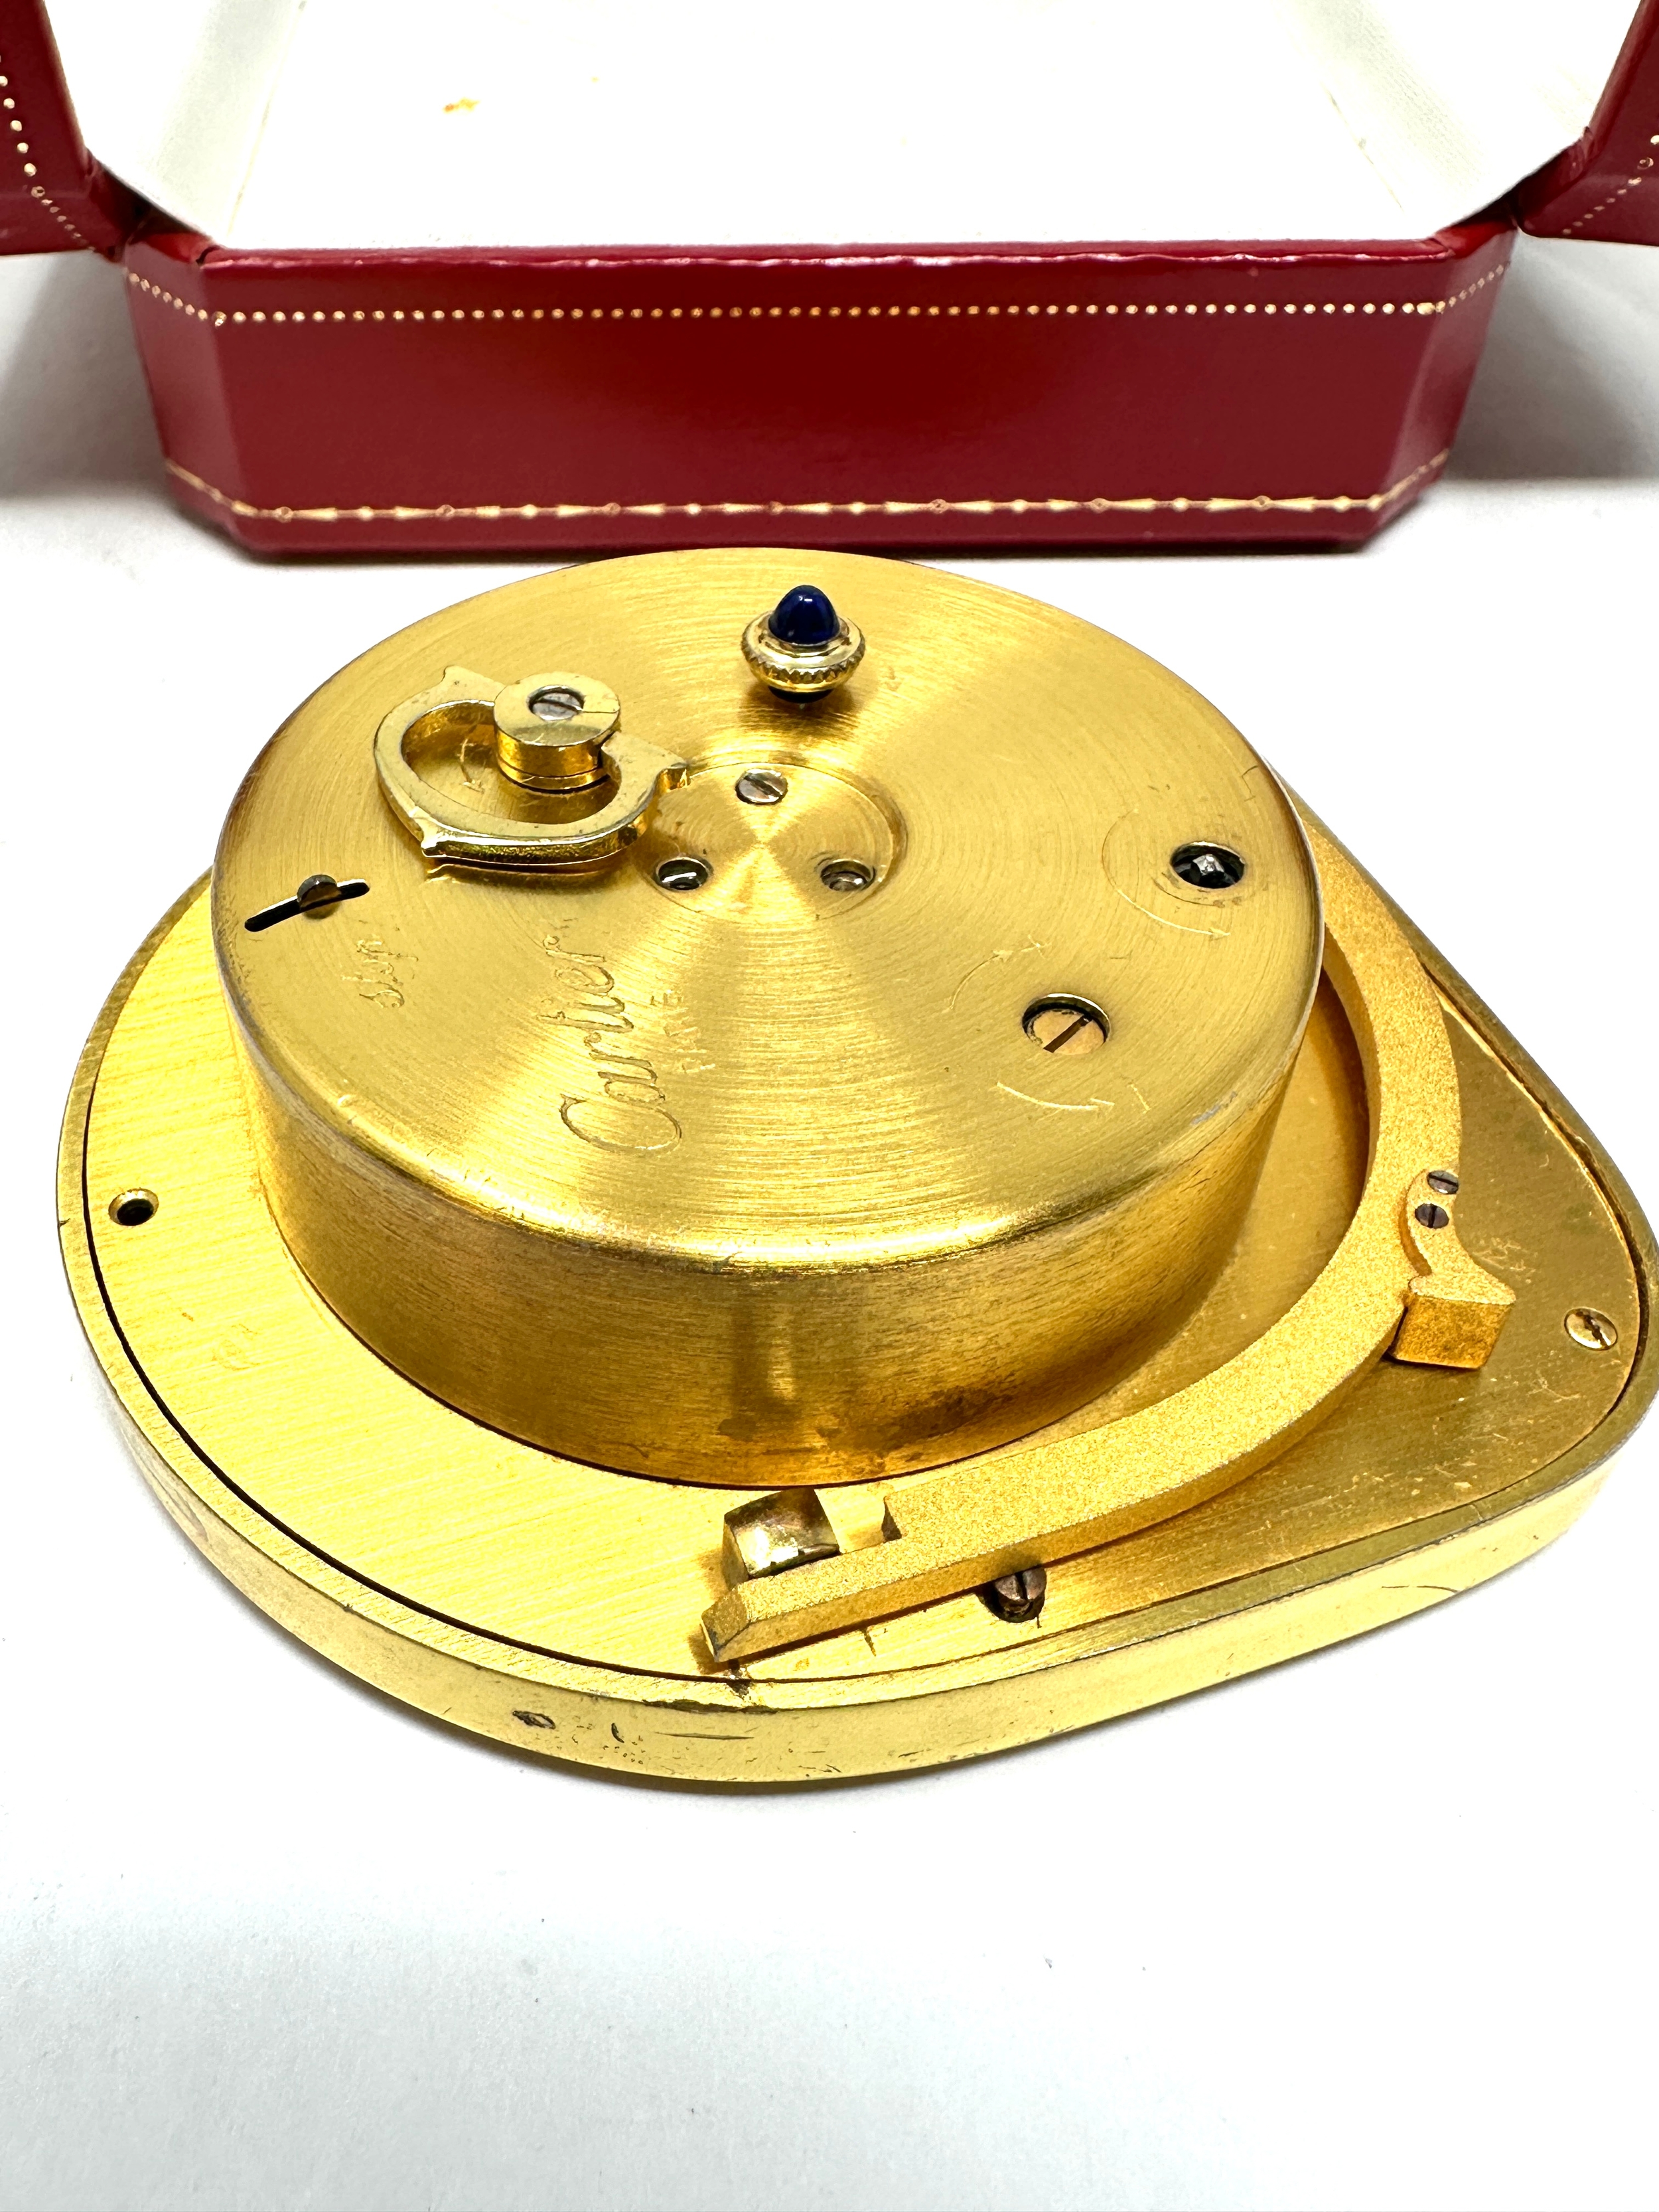 Boxed Cartier les must de cartier pendulette vintage gold tone travel bedside alarm clock the - Image 6 of 7